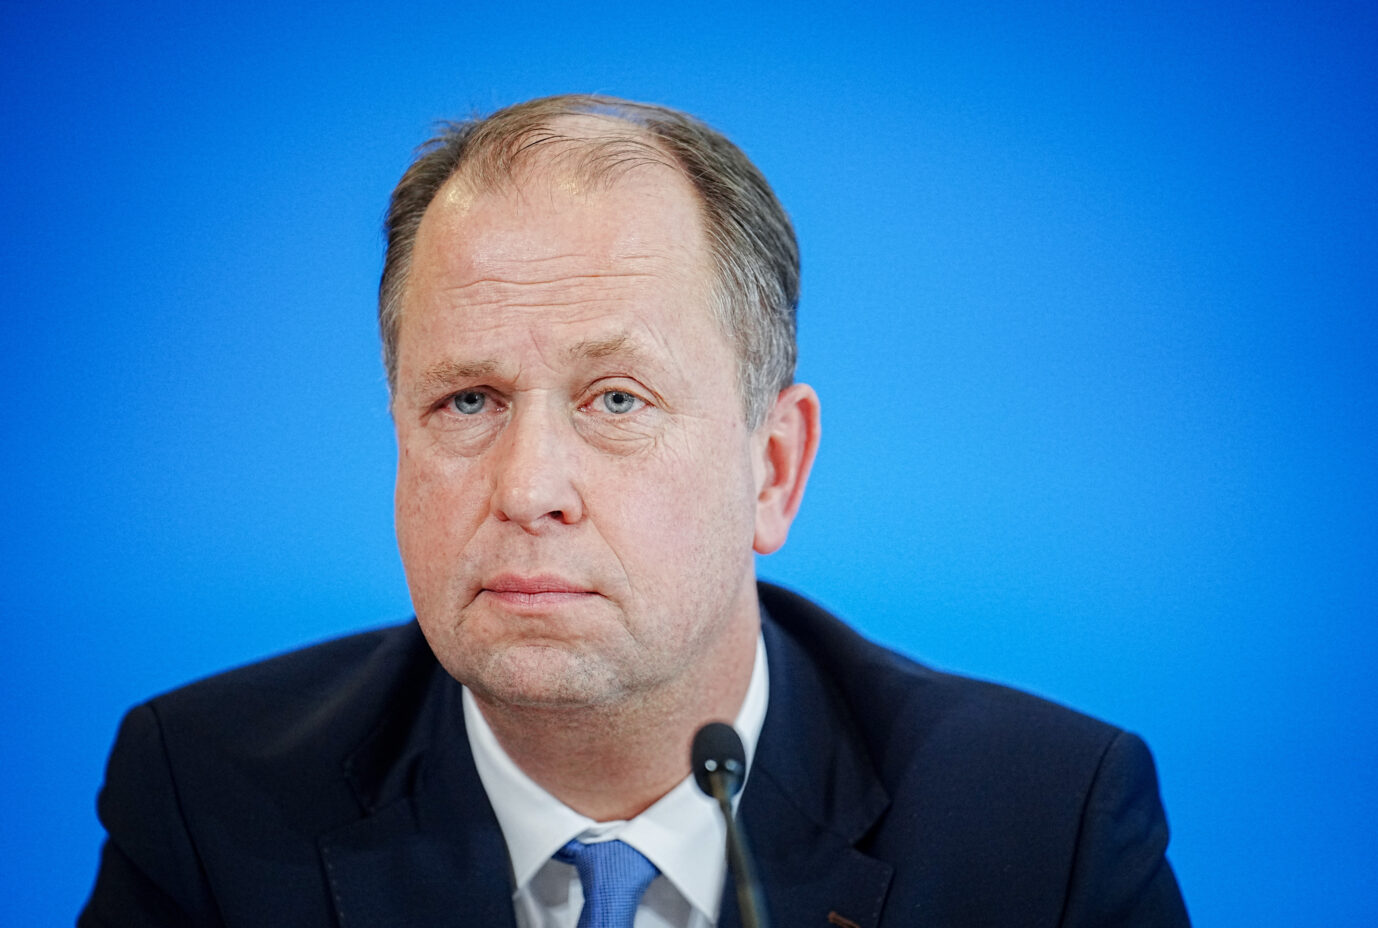 Joachim Stamp (FDP) der Sonderbevollmächtigte der Bundesregierung für Migrationsabkommen, will Vereinbarungen mit Kenia, Usbekistan und weiteren Staaten treffen. Mit Georgien und der Republik Moldau gibt es bereits Abkommen.